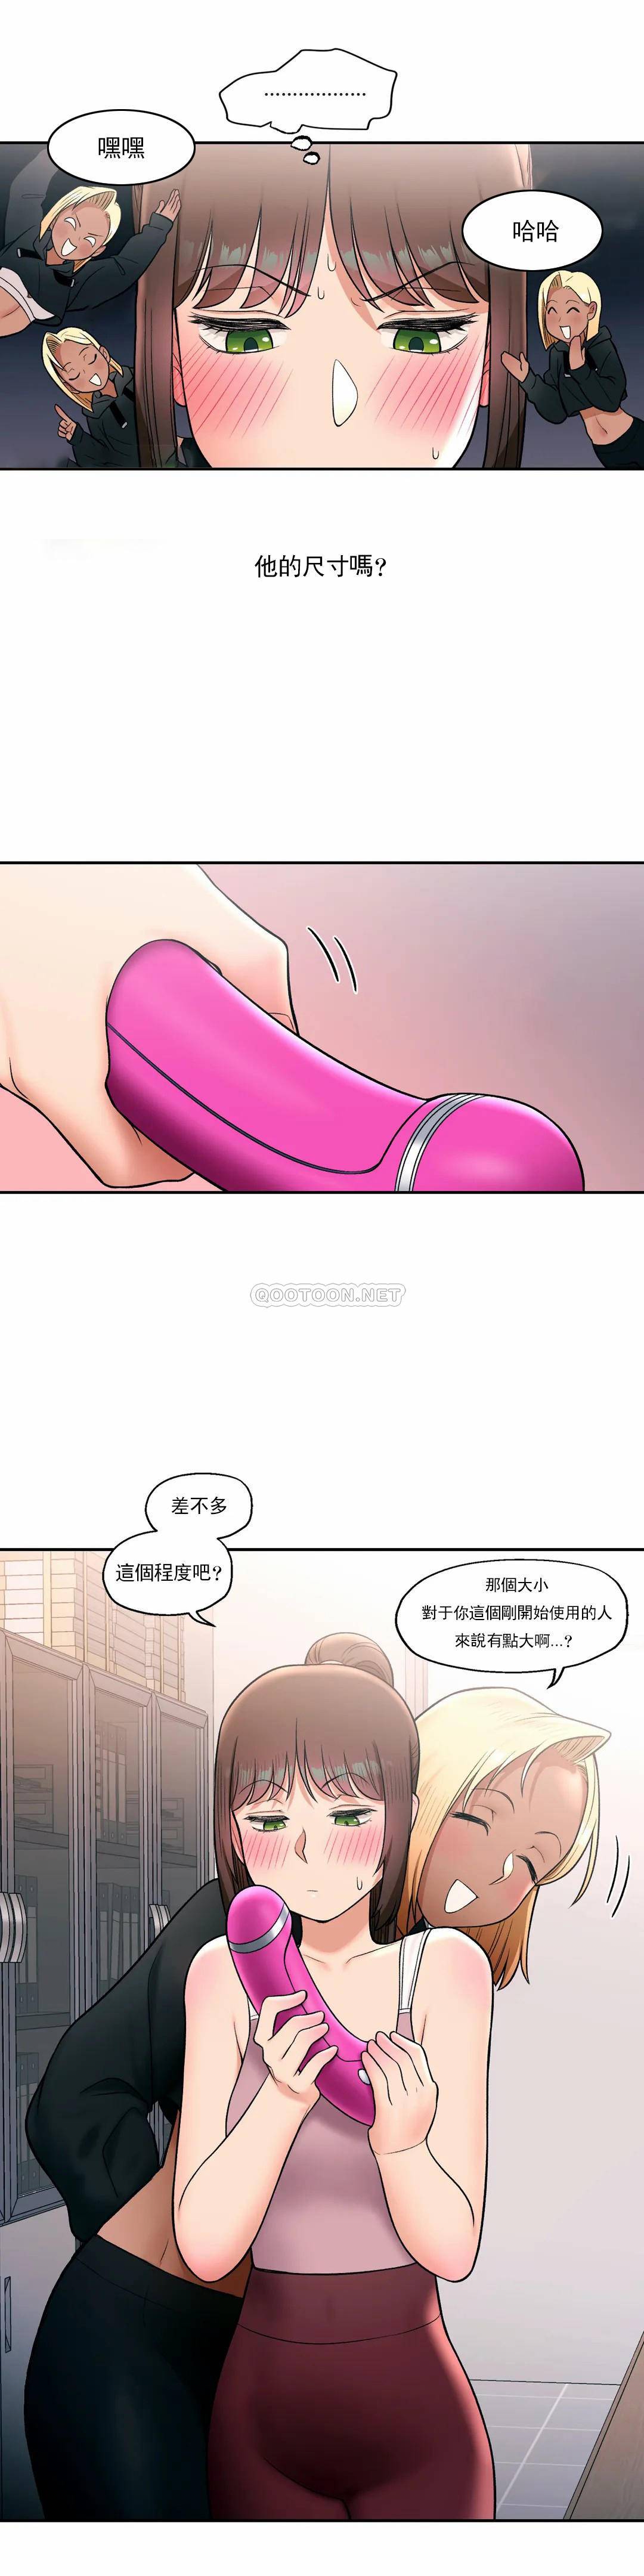 韩国污漫画 非常運動 第29话 26